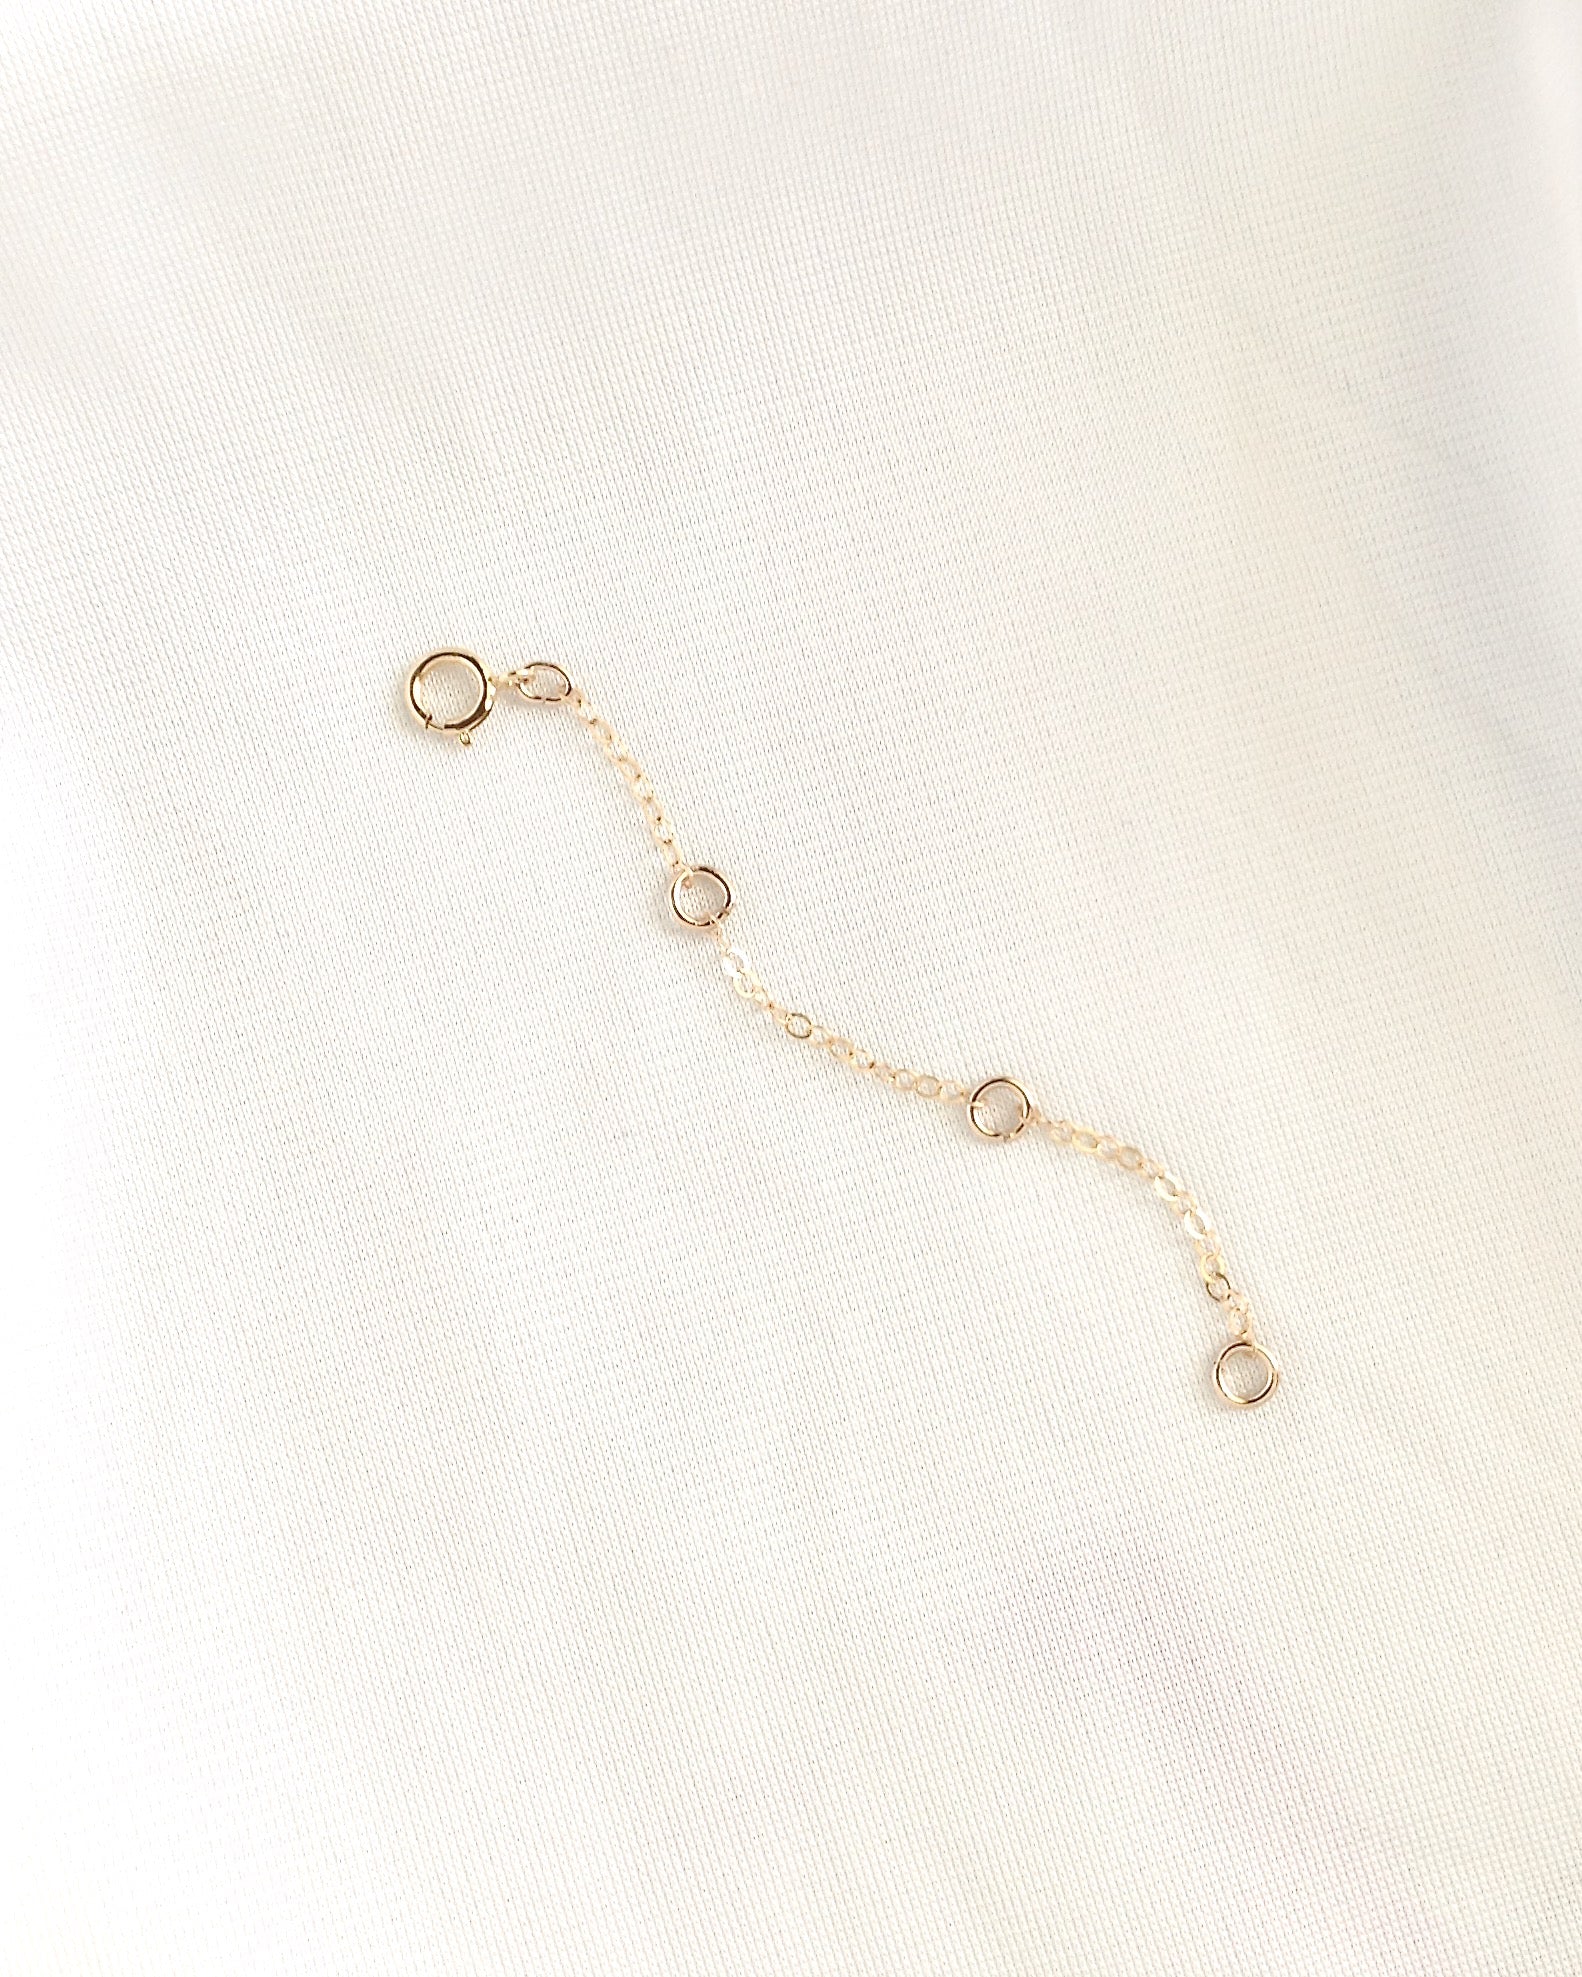 Adjustable Necklace Bracelet or Anklet Chain Extender